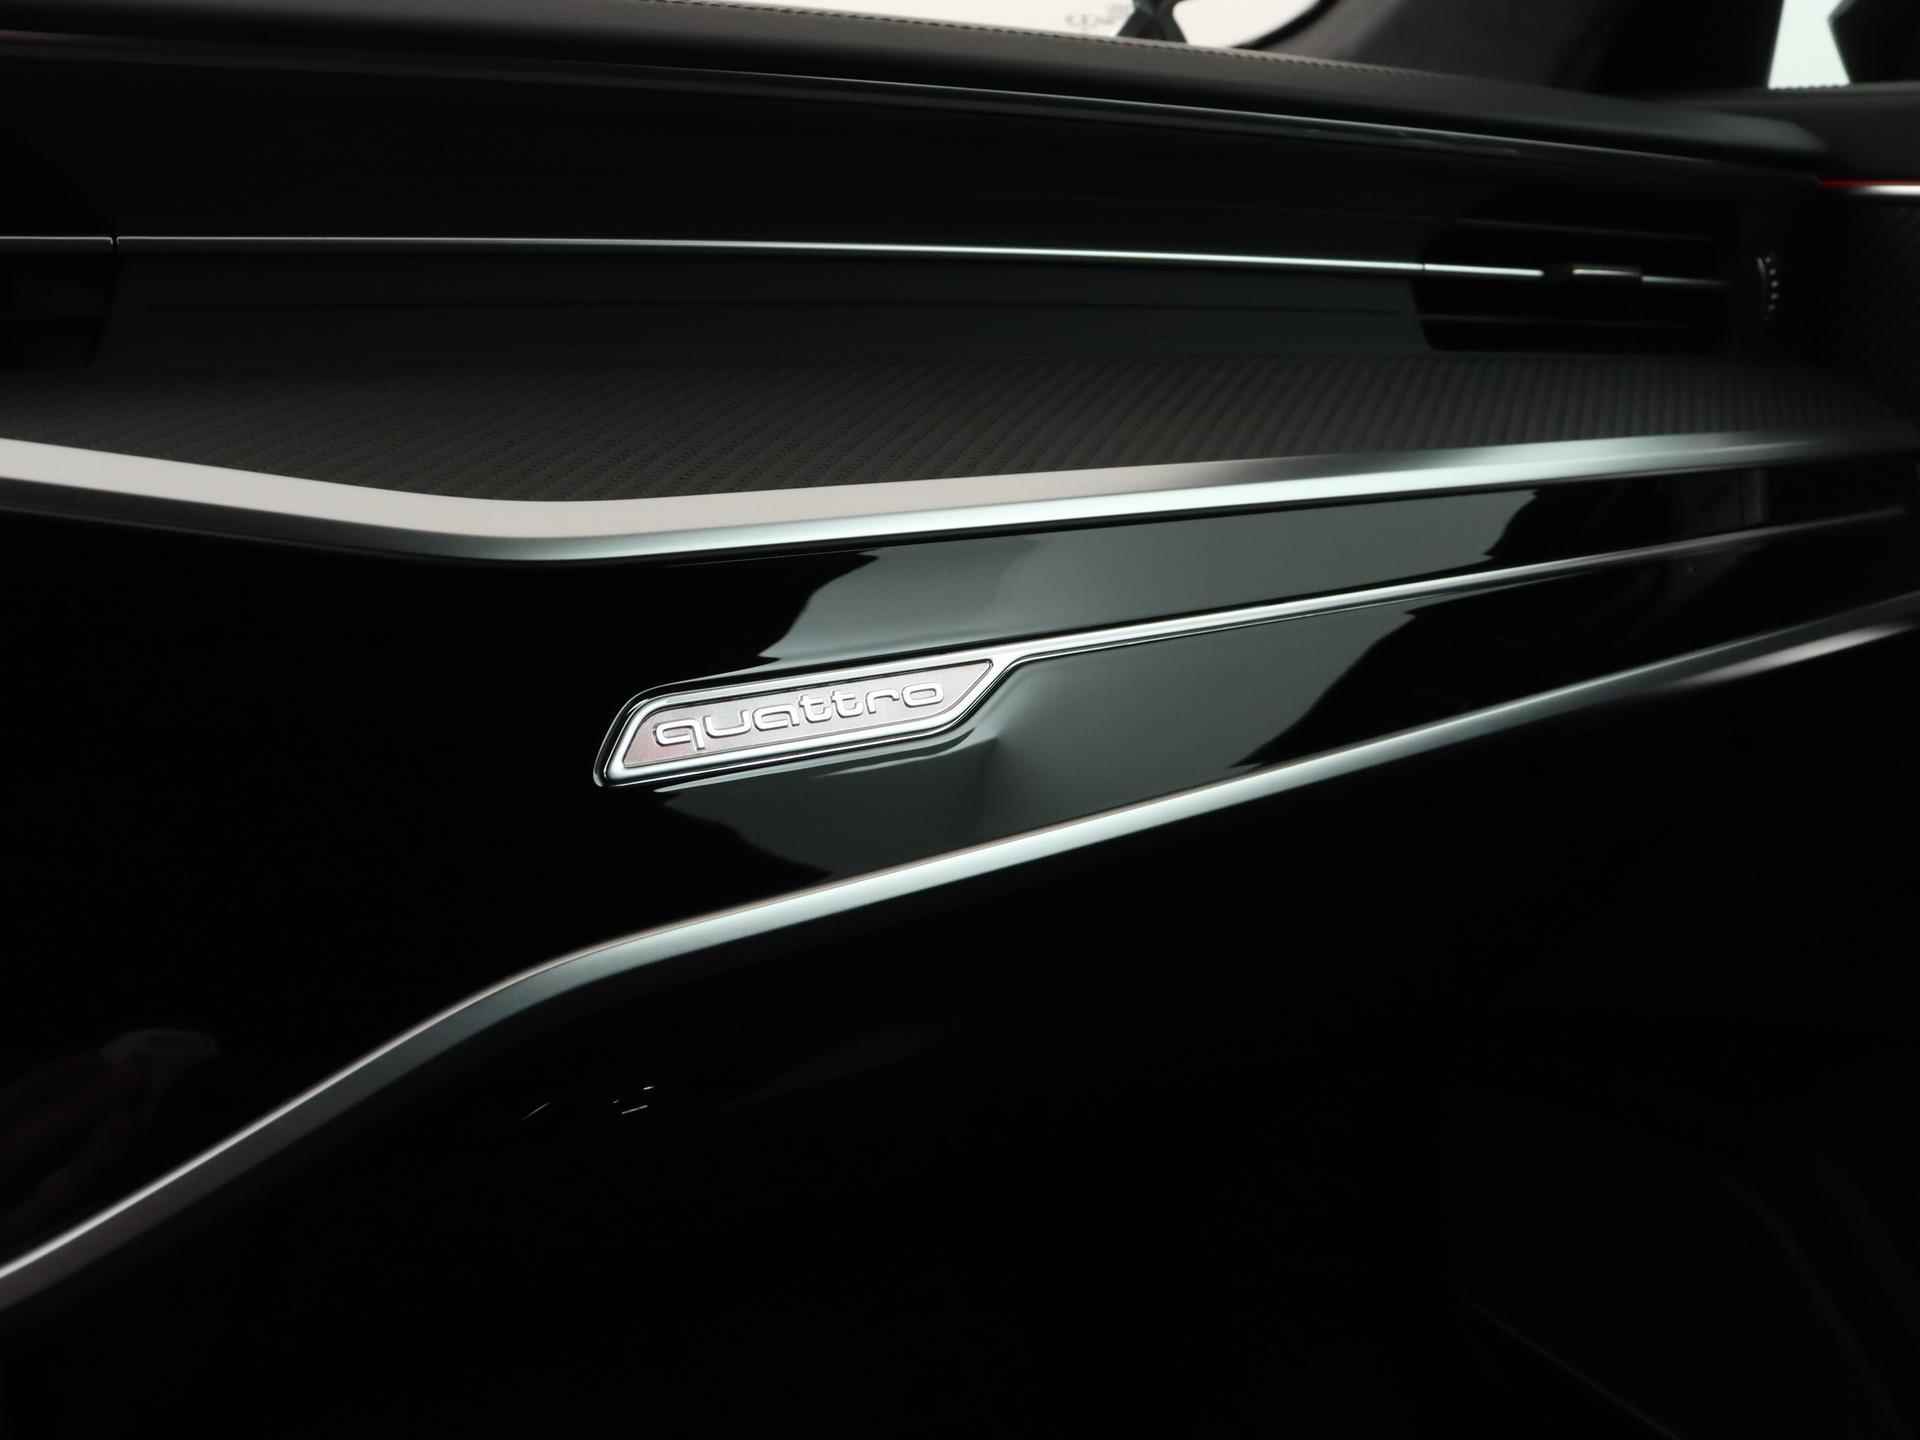 Audi RS 6 Avant TFSI quattro 600 PK | Head-up display | Bang & Olufsen Soundsystem | 22 inch lm velgen | RS Dynamic Pakket Plus | RS Design pakket Rood |Optiekpakket Zwart Plus | Panorama dak | RS Sportuitlaat | Keramische remschijven Rood | RS Sportonderstel Plus | Servosluiting deuren | Nu € 36.129,- ACTIEKORTING! | DIRECT LEVERBAAR! | - 20/35